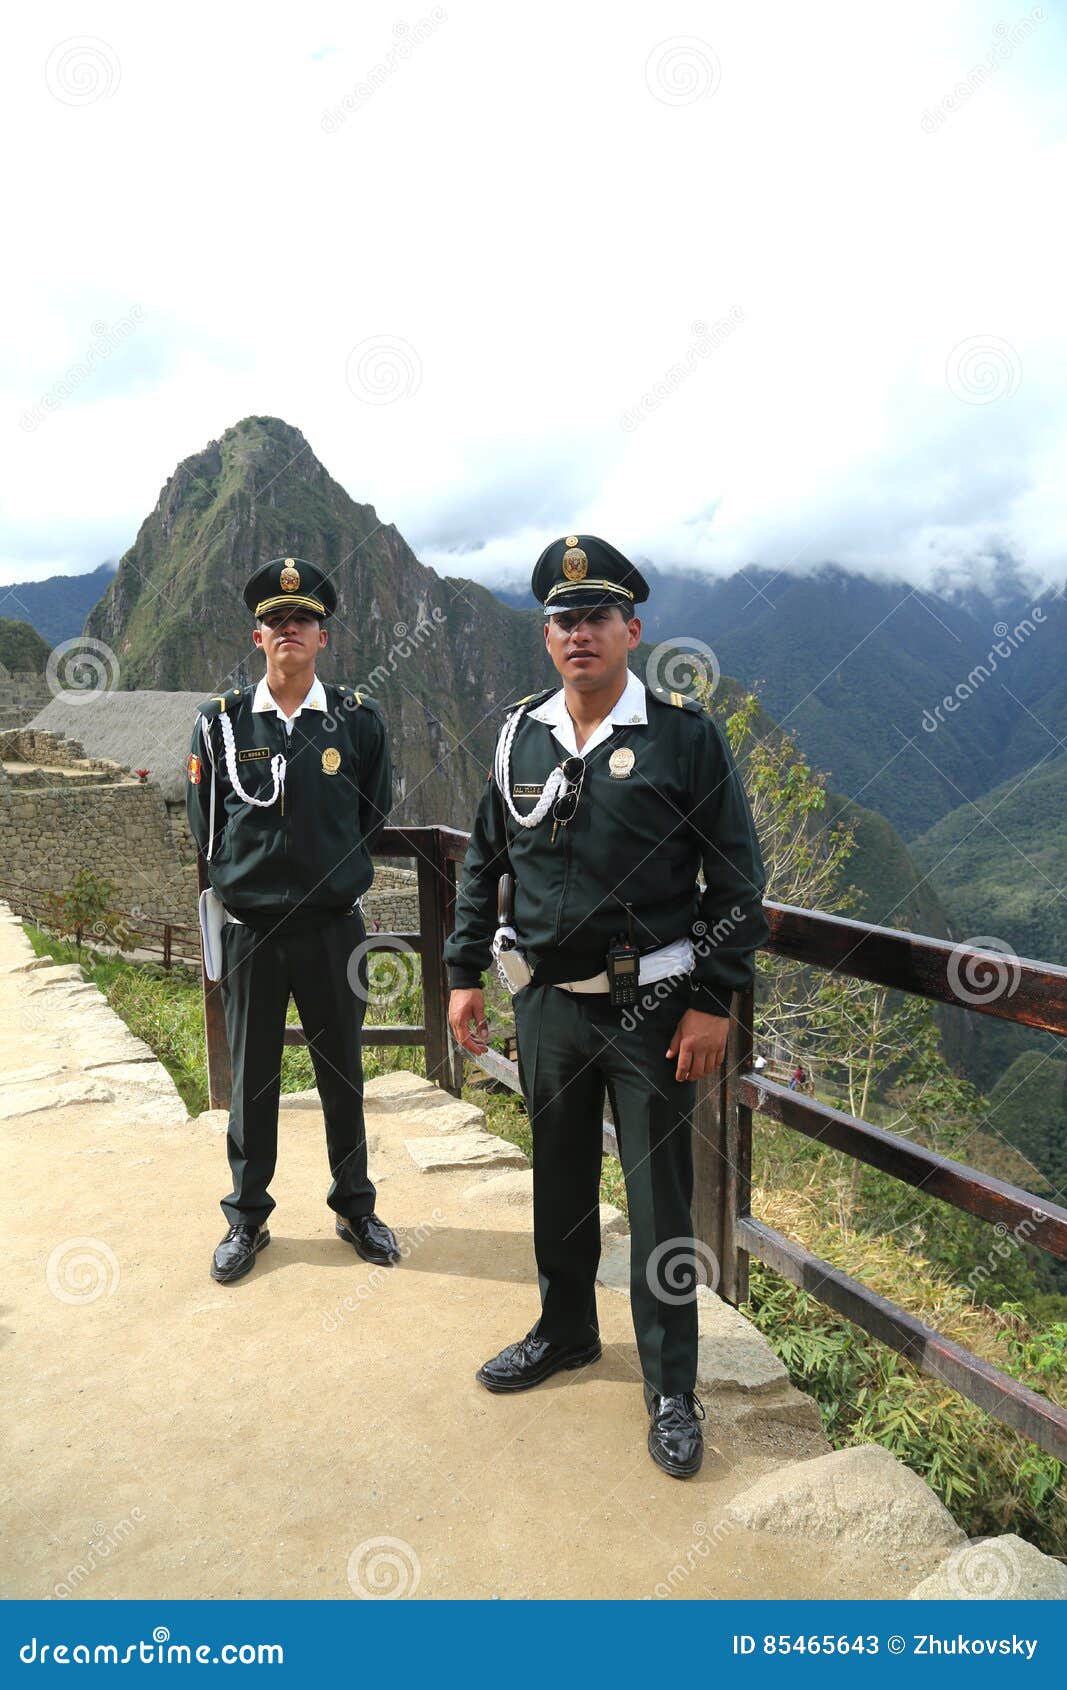 tourism police peru